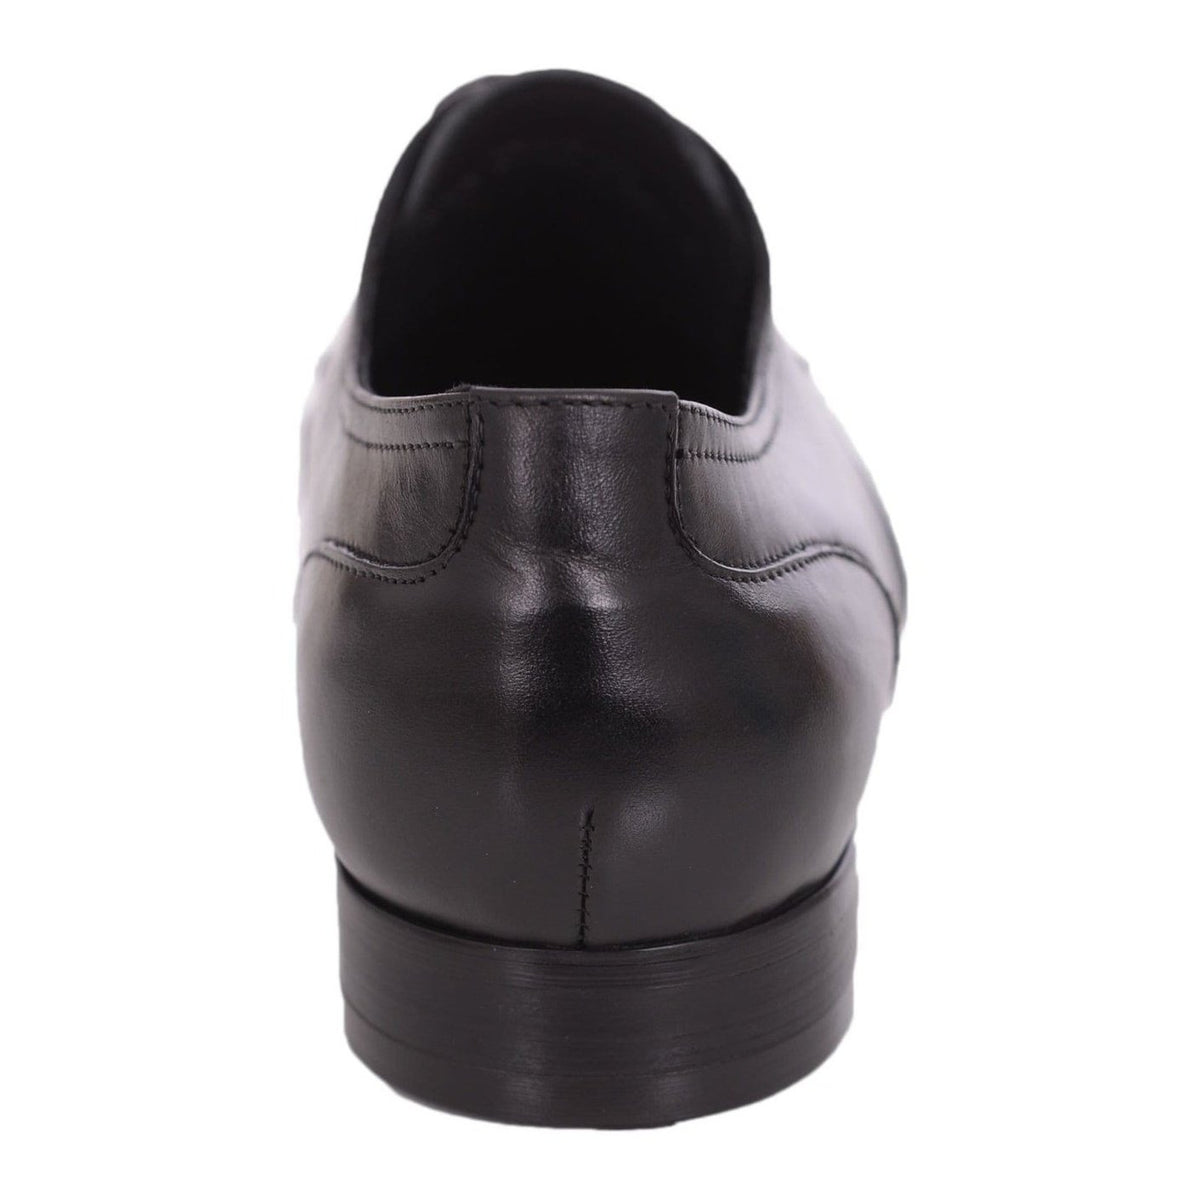 Carrucci Shoes For Amazon Carrucci Mens Black Plain Toe Oxford Leather Dress Shoes